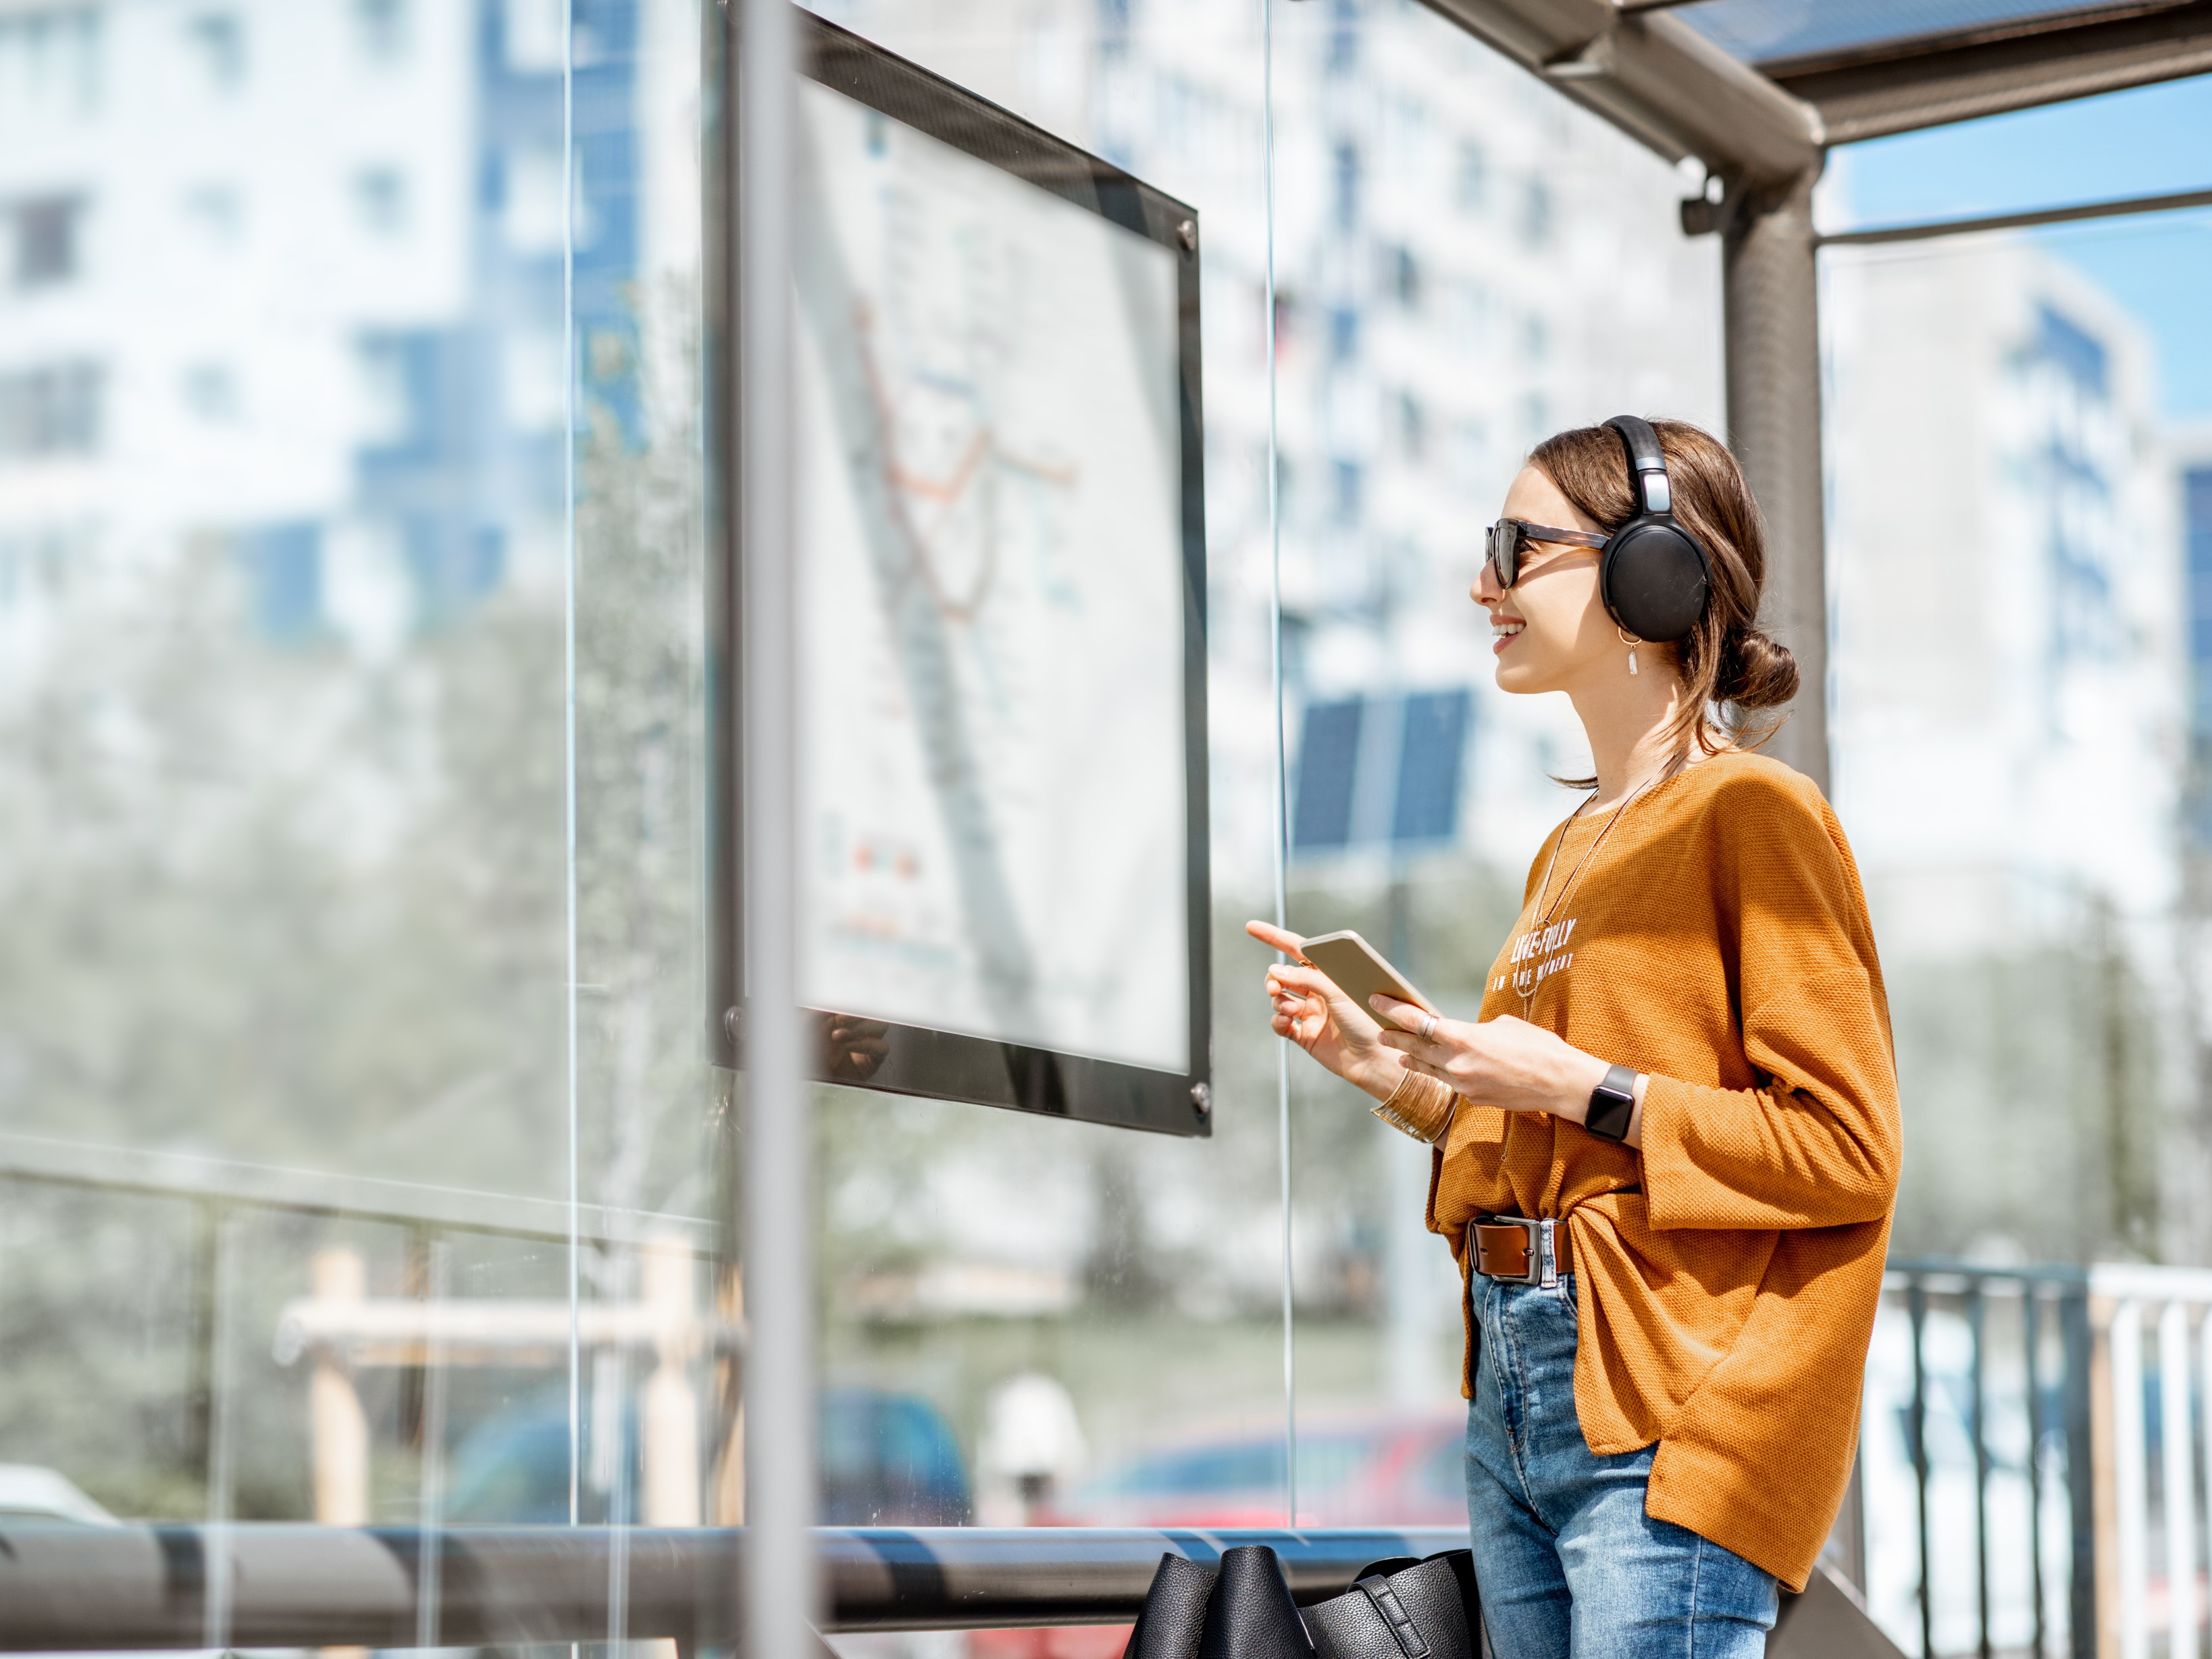 Jonge vrouw staat op stralende dag met koptelefoon lachend te kijken naar een vertrekstaat op een bushalte.